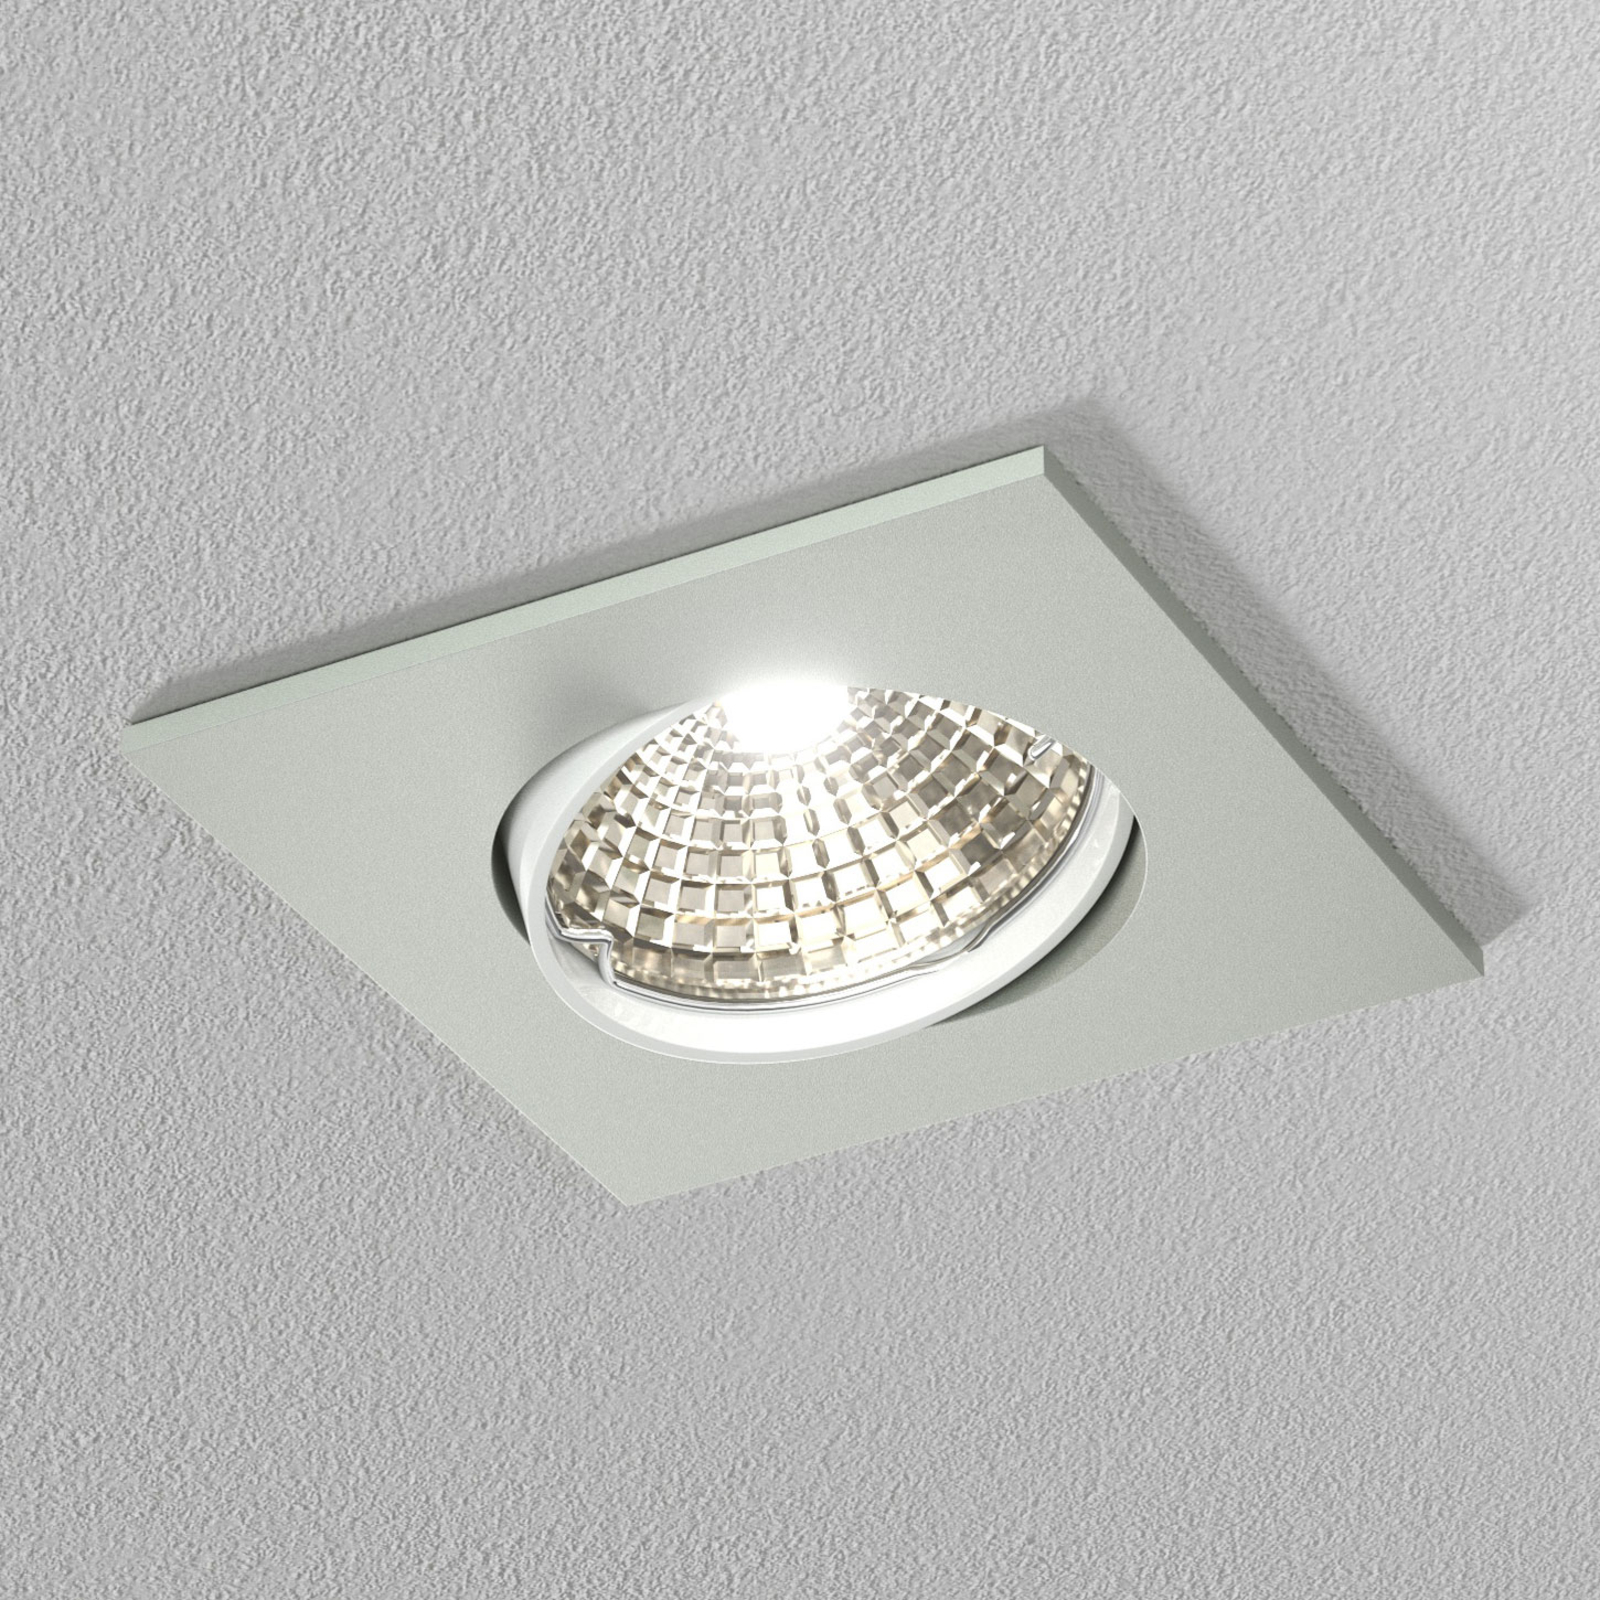 Discrete white ceiling recessed light, 6.8 cm